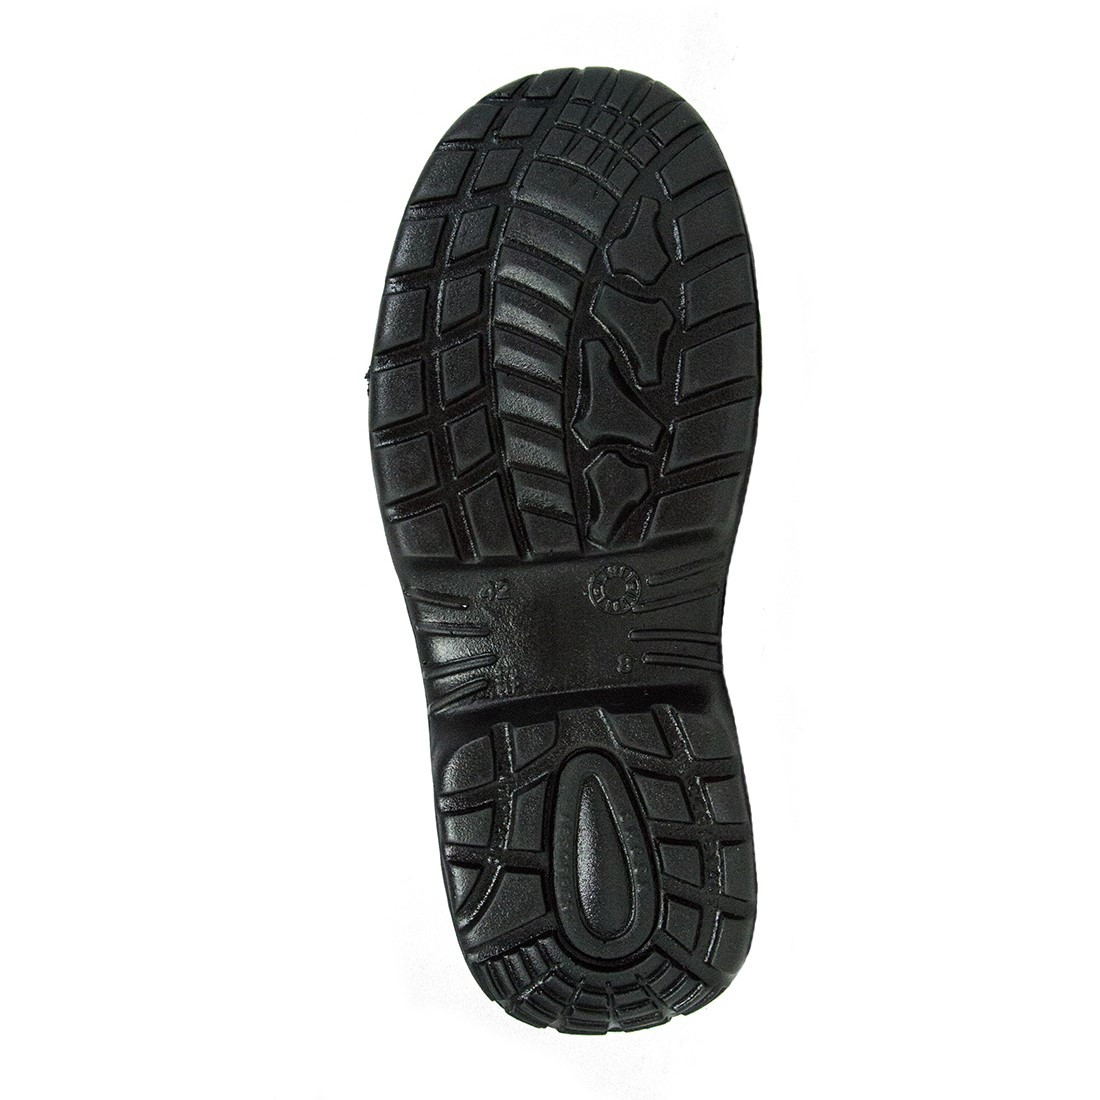 Etoile Shoe S3 SRC - Les chaussures de protection